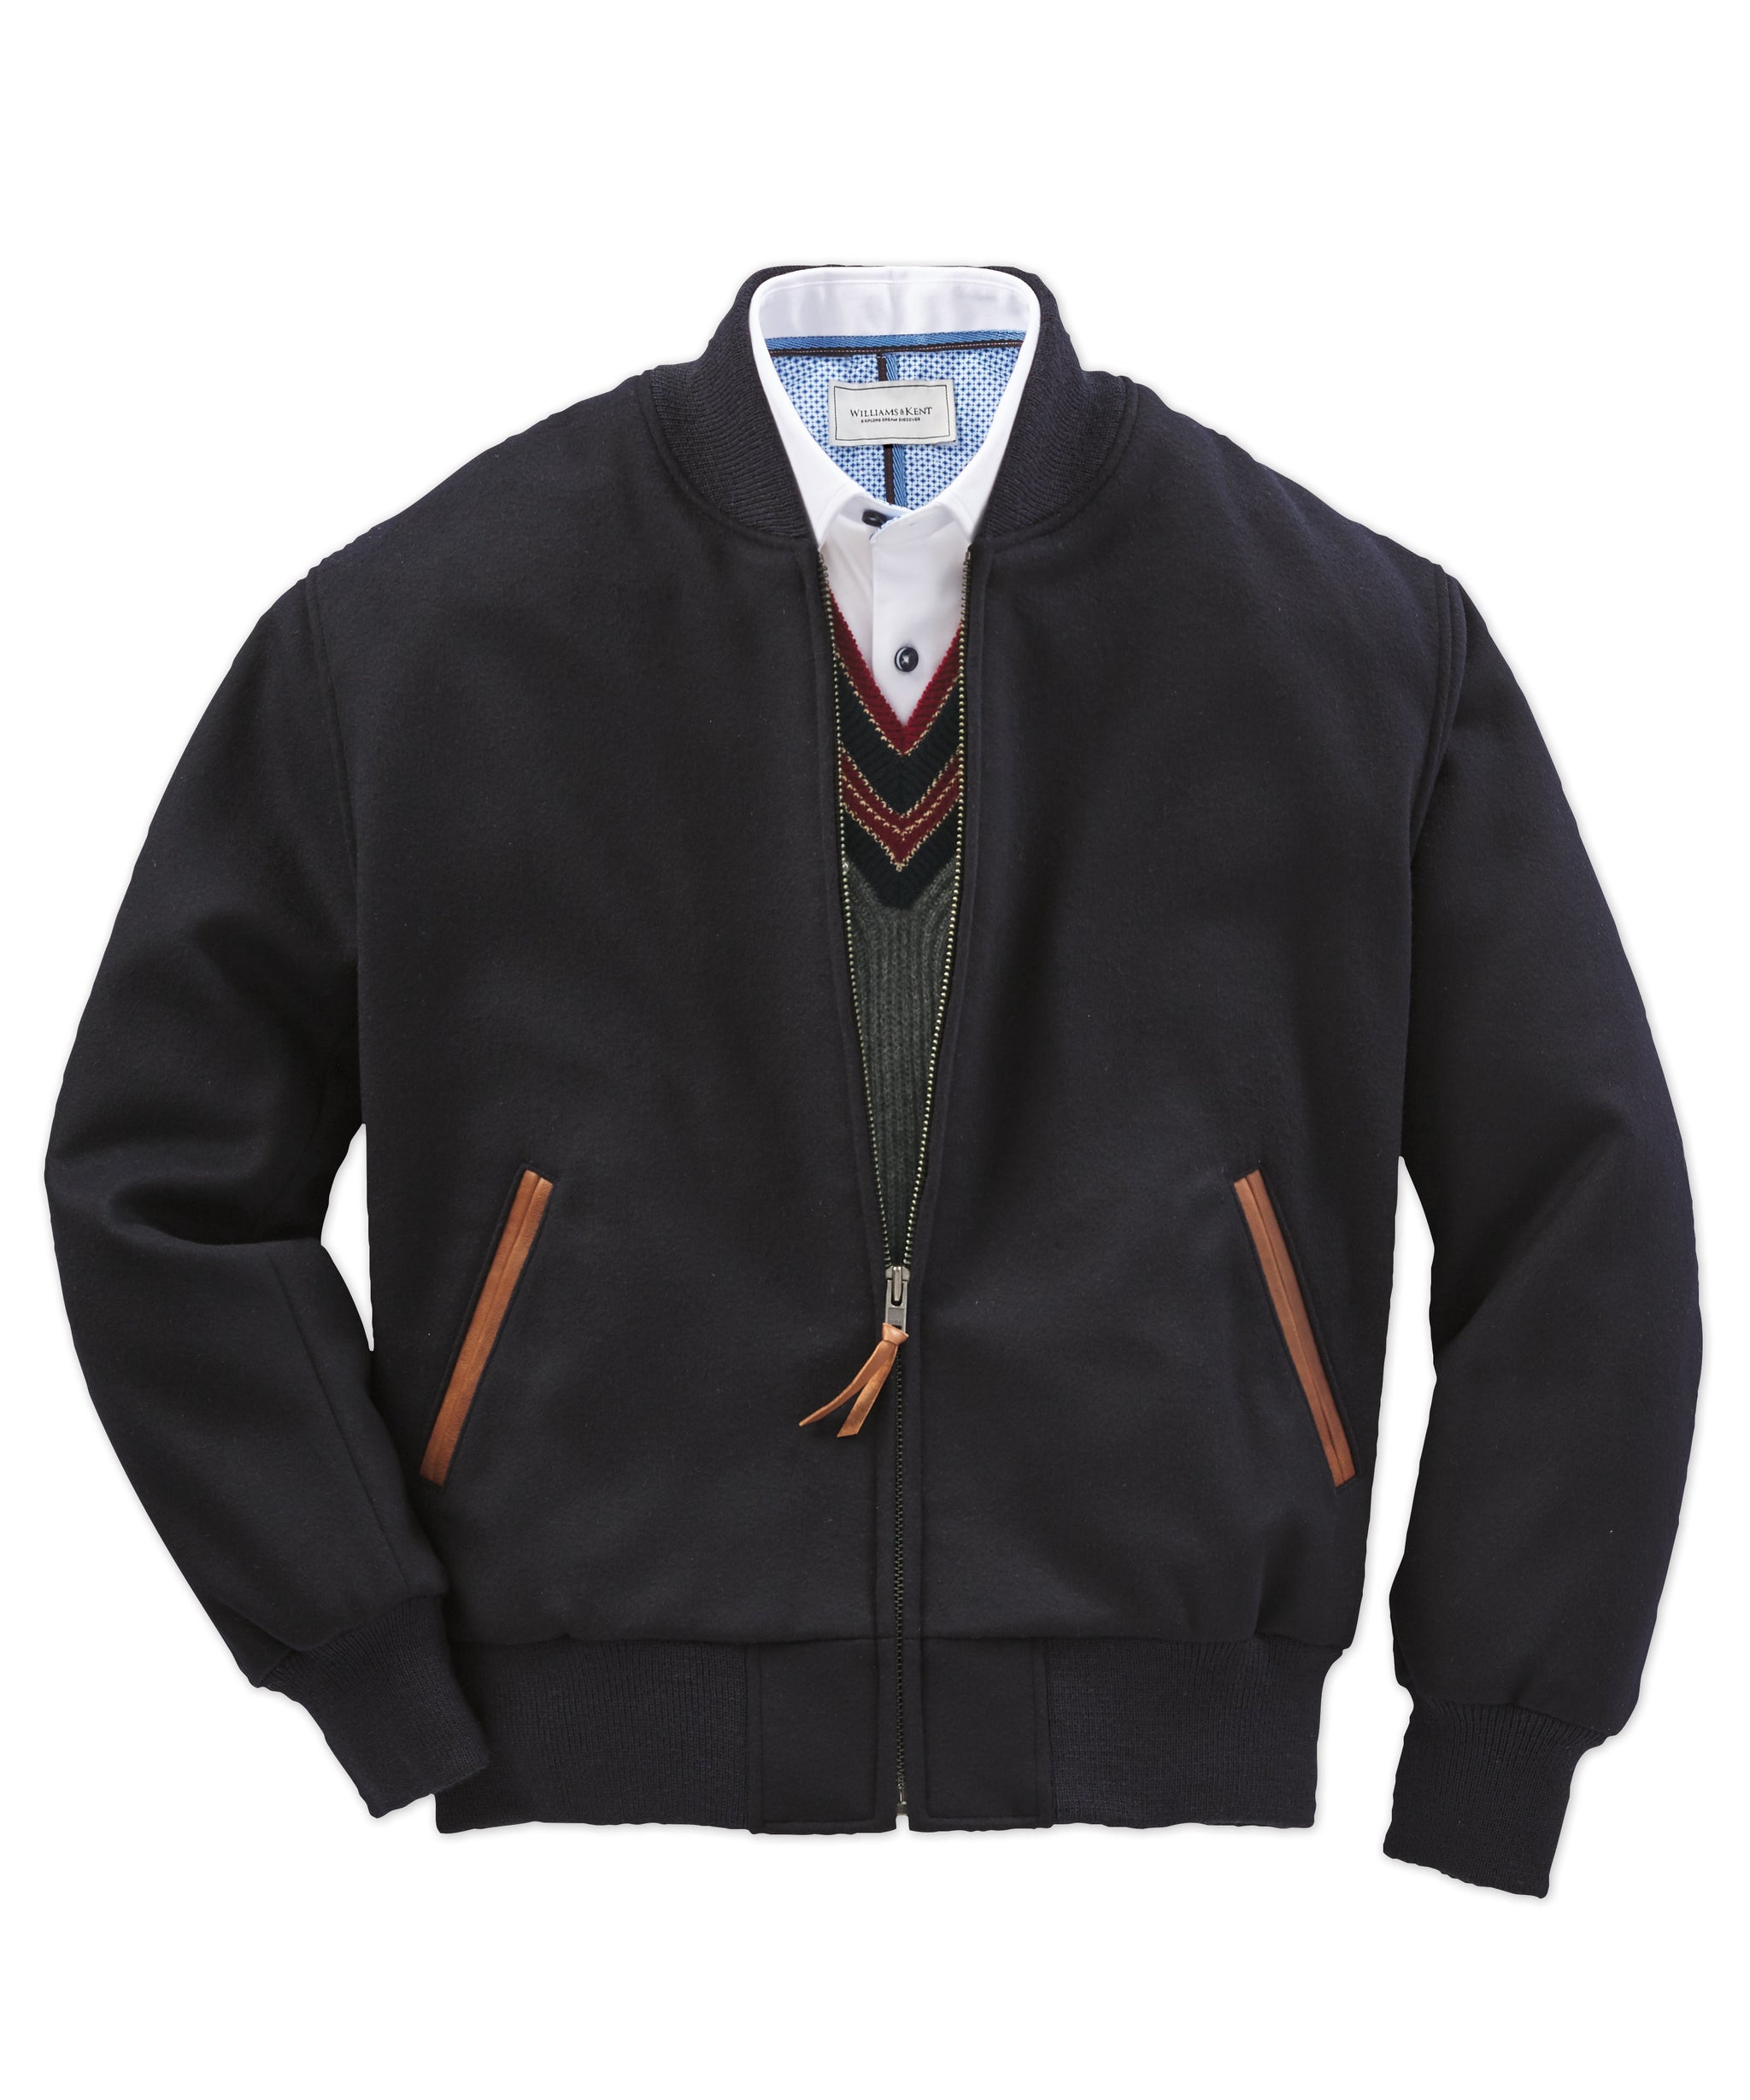 Polo G Varsity Jacket For Sale - William Jacket